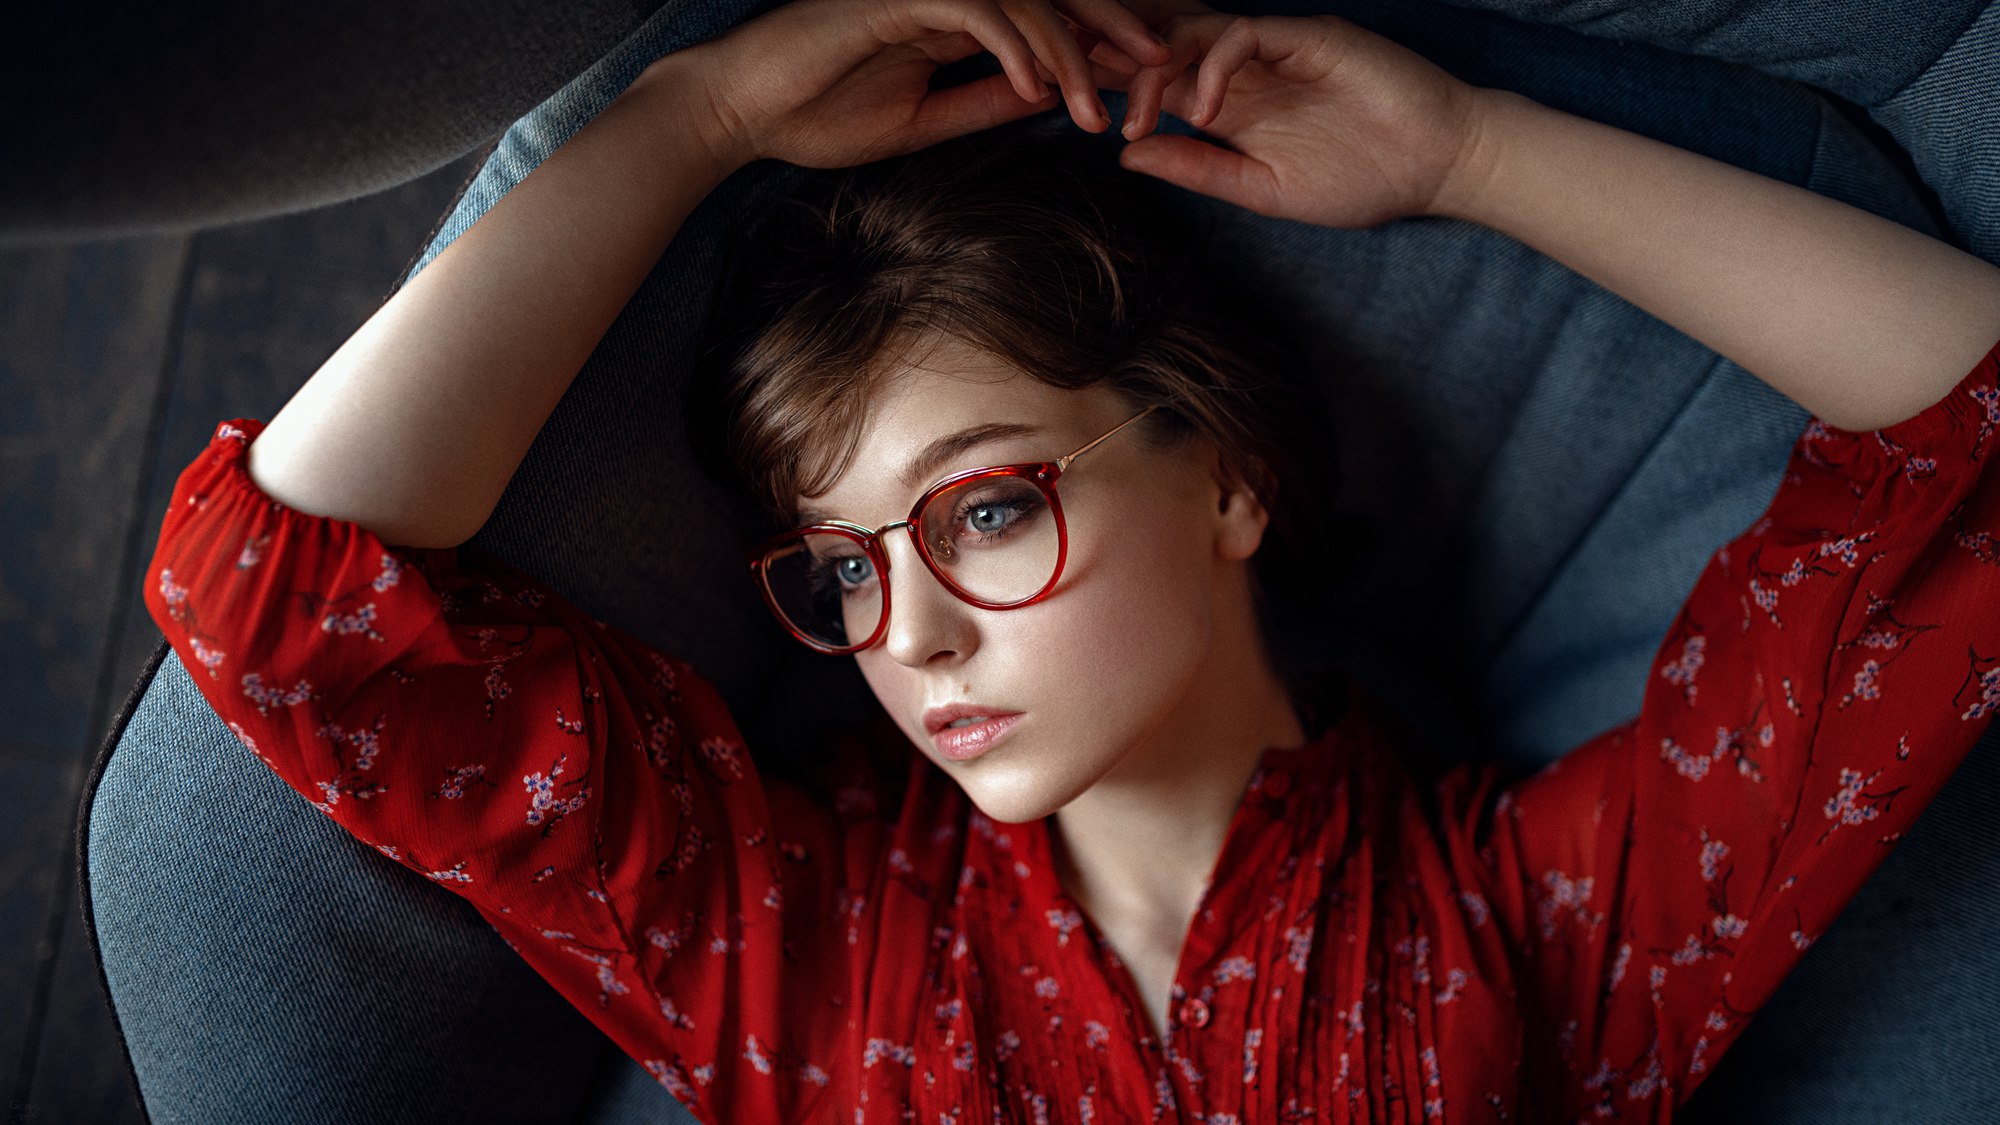 Women Model Women With Glasses Olya Pushkina 2000x1125